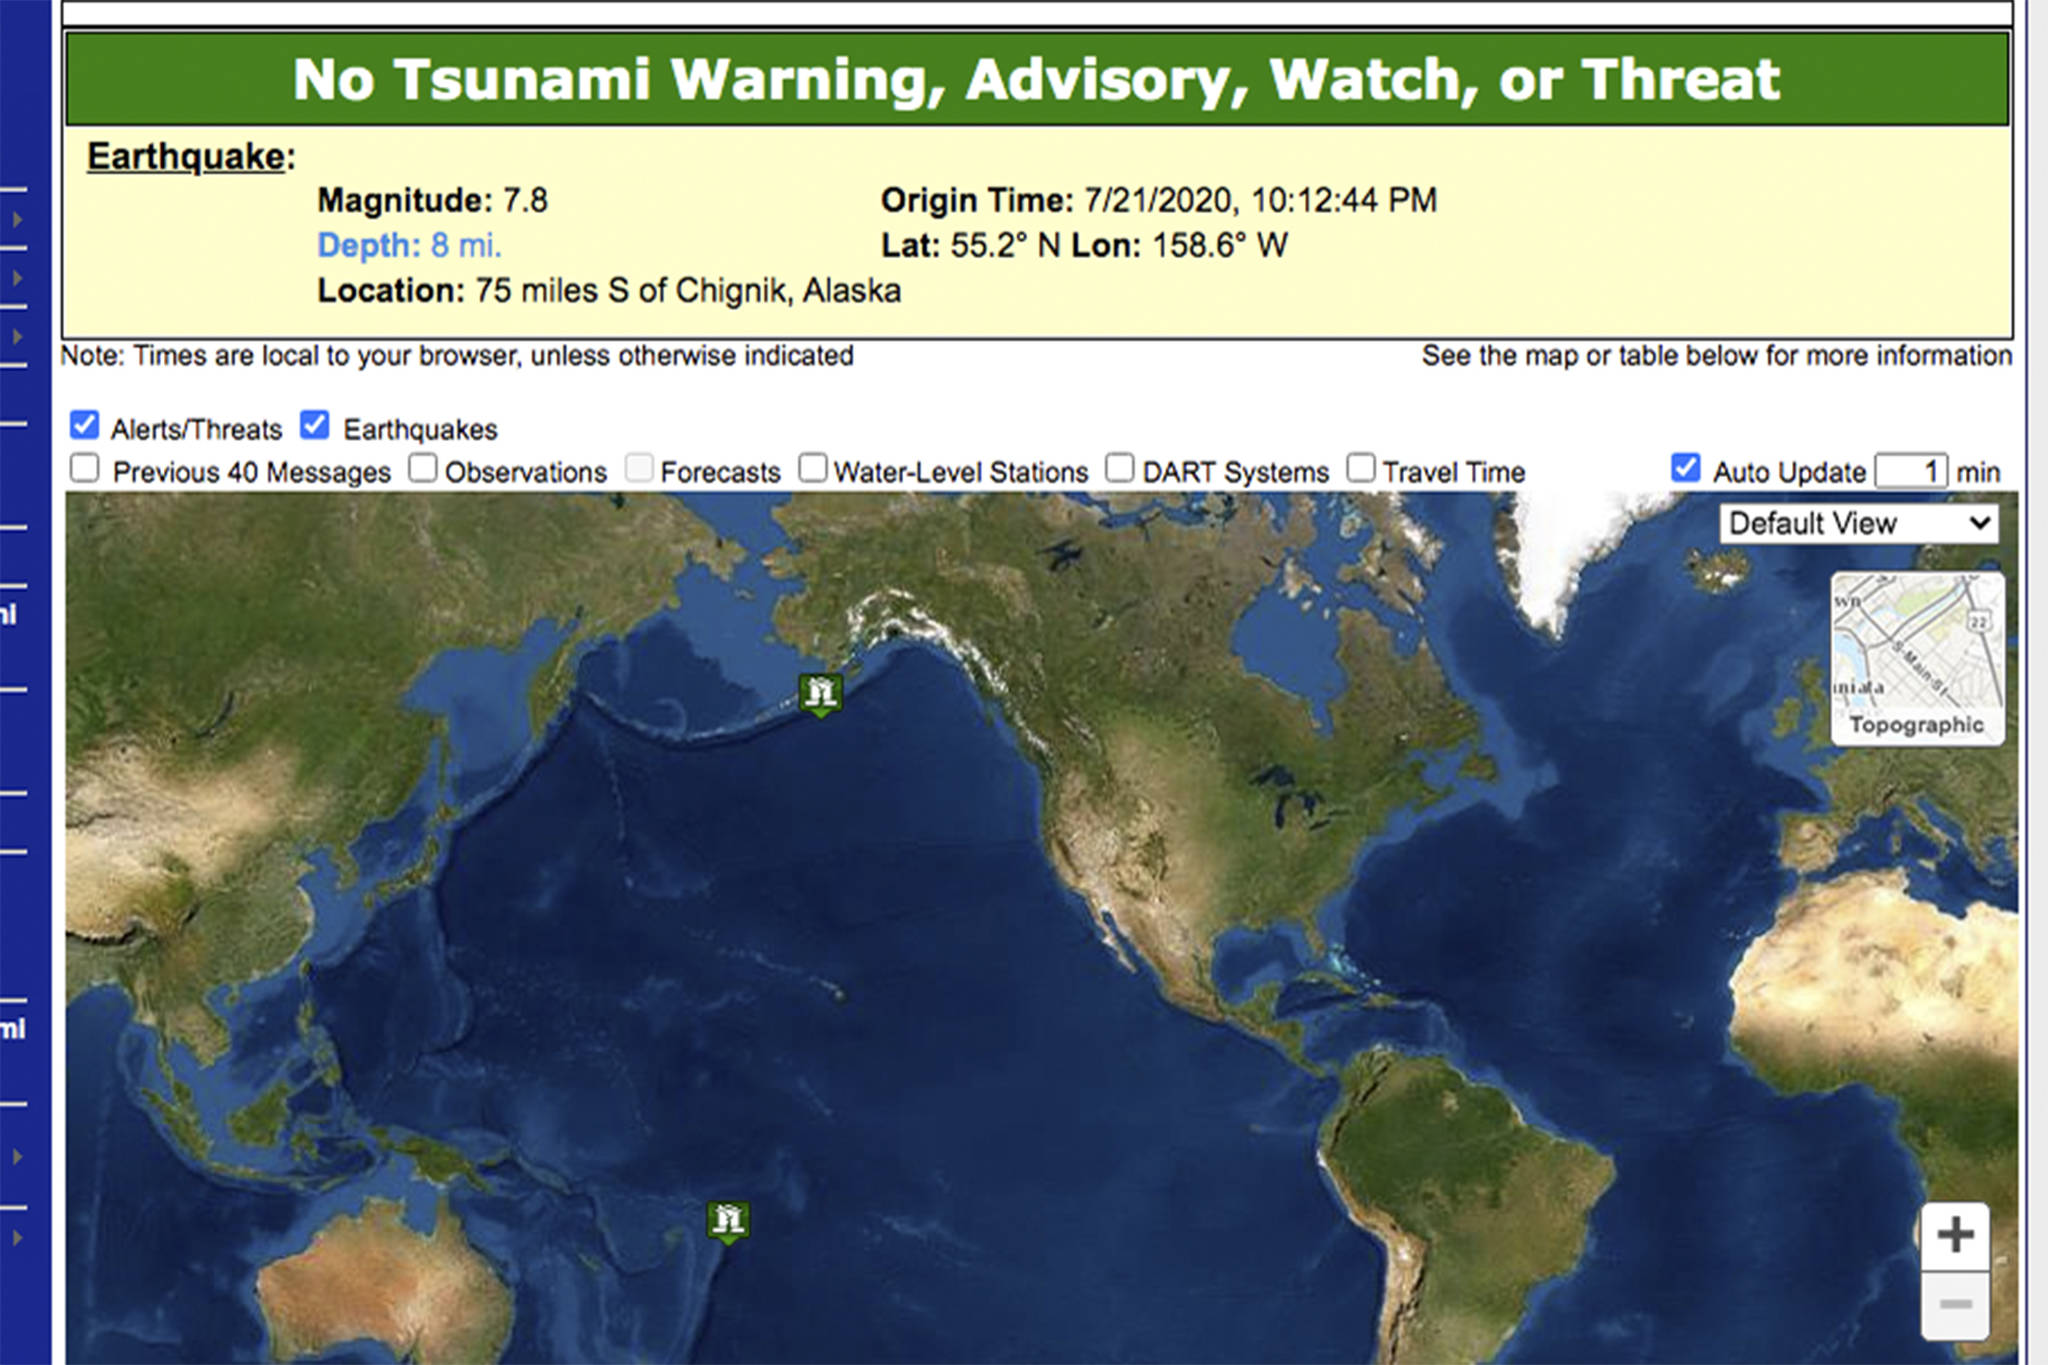 Screenshot from the U.S. Tsunami Warning Center